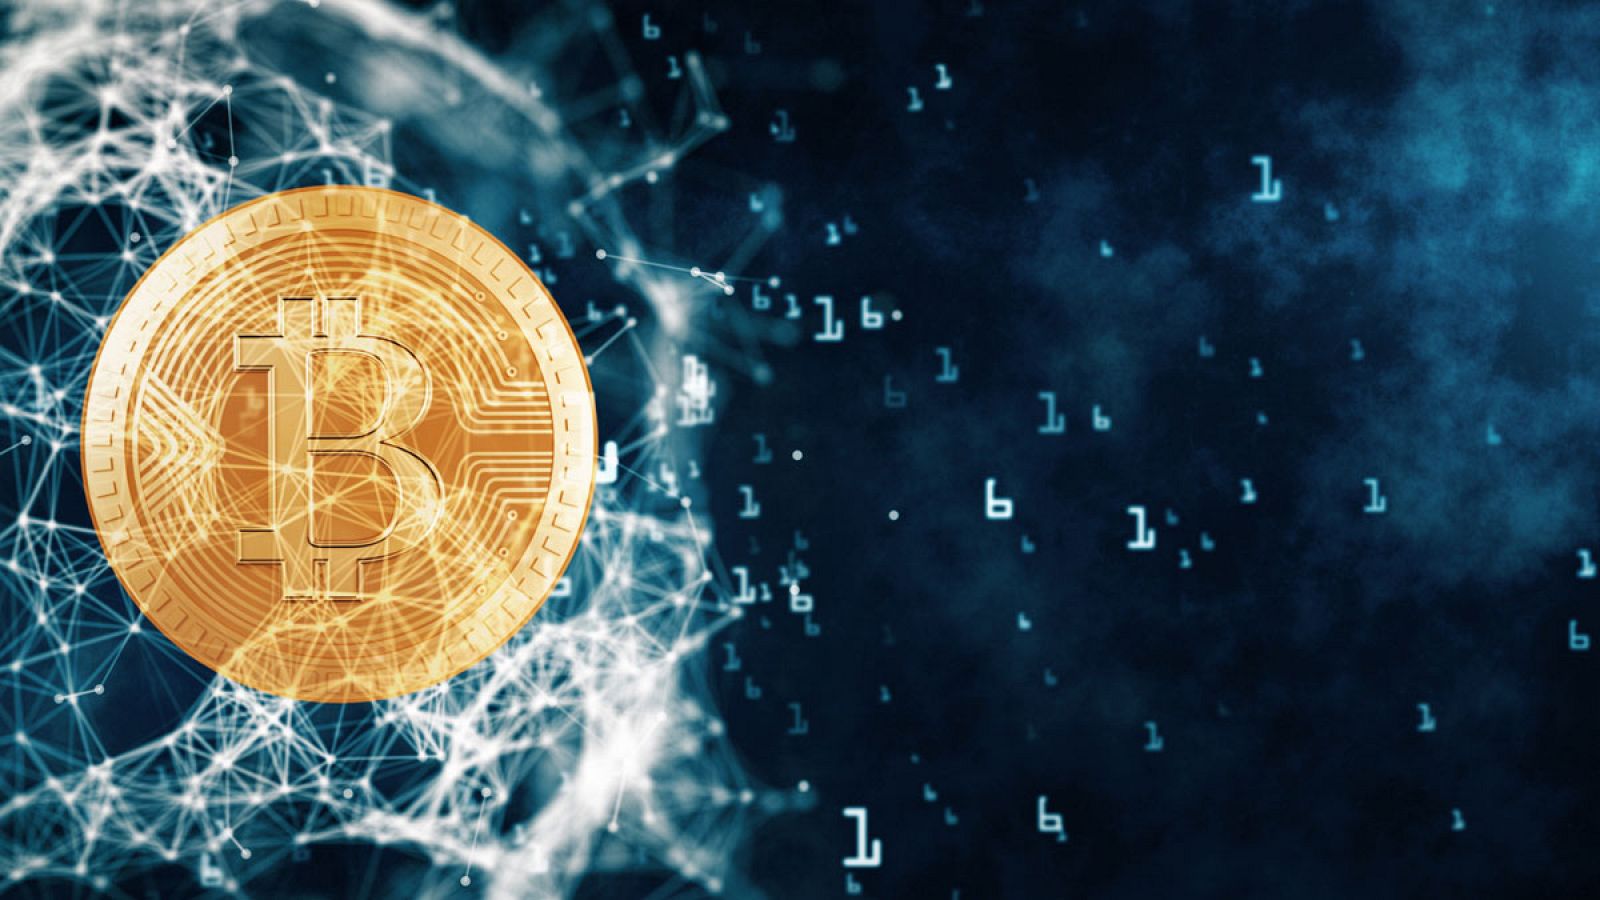 Representación del concepto de criptomoneda: el símbolo del bitcoin inscrito en una cadena de bloques numéricos